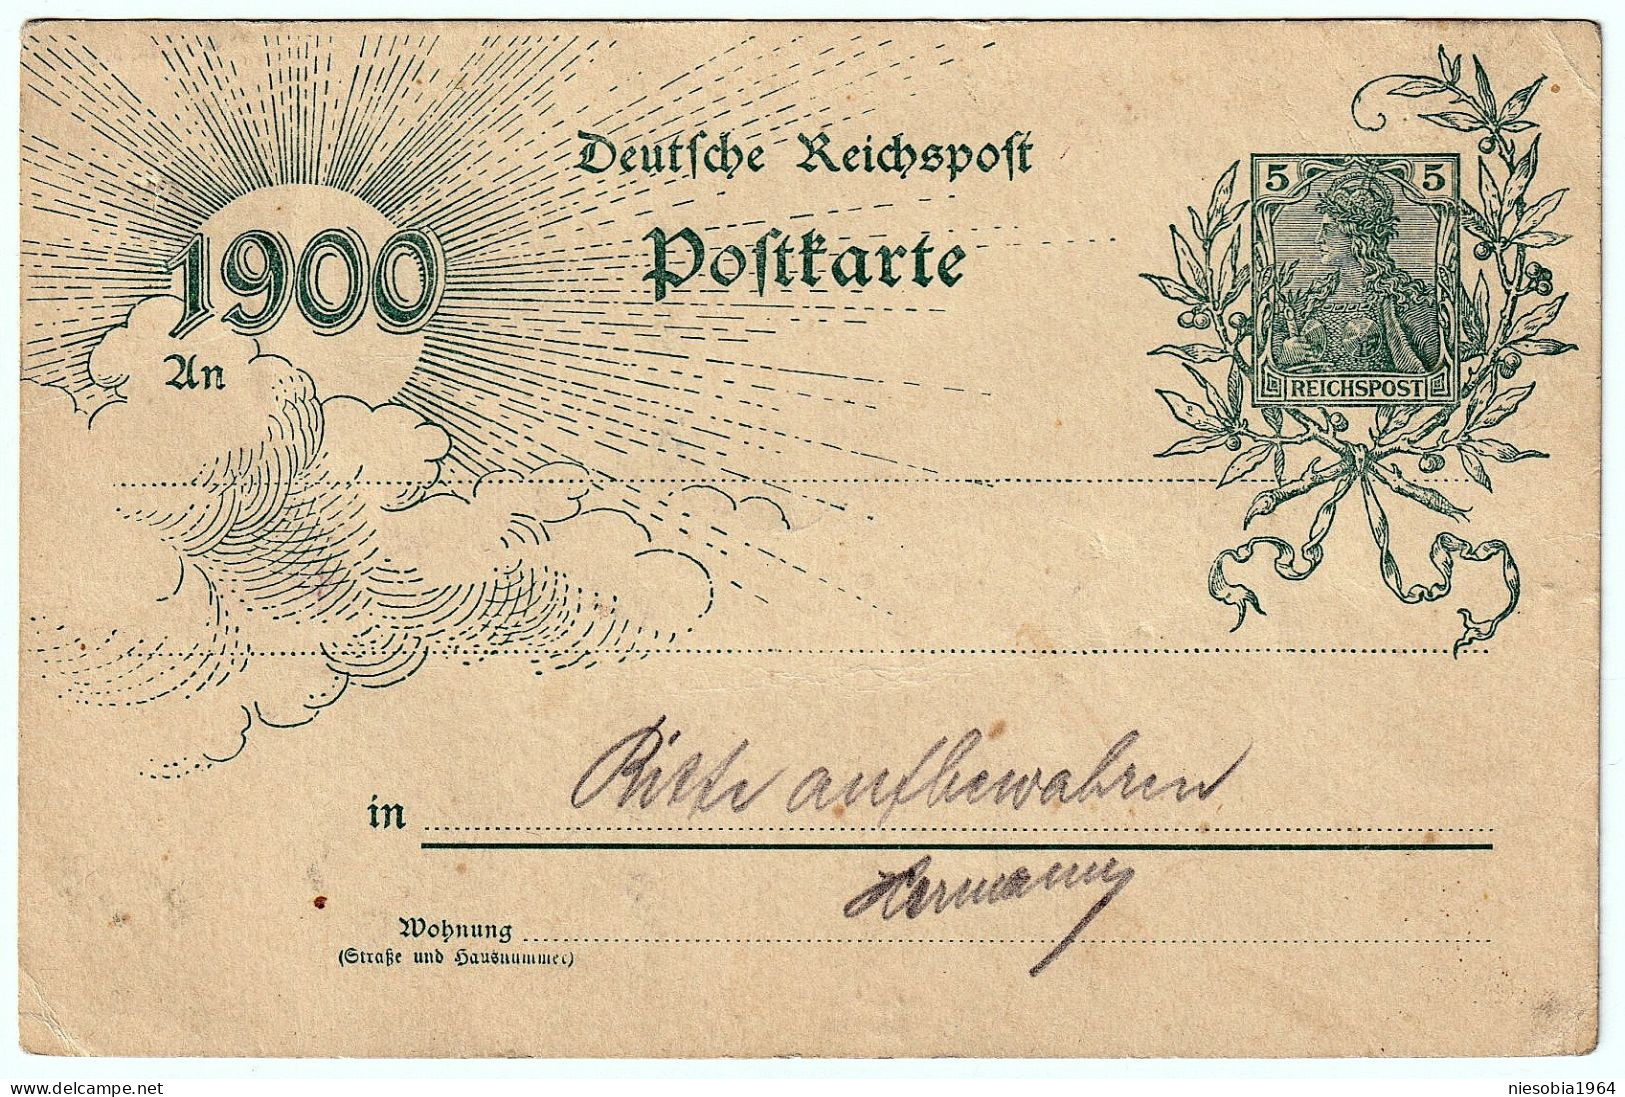 Imperial Germany 5 Pfennig Postcard "End Of XIX C.1900" Jahrhundertwende, Deutsche Reichspost Postkarte. Gedruckte Marke - Postkarten